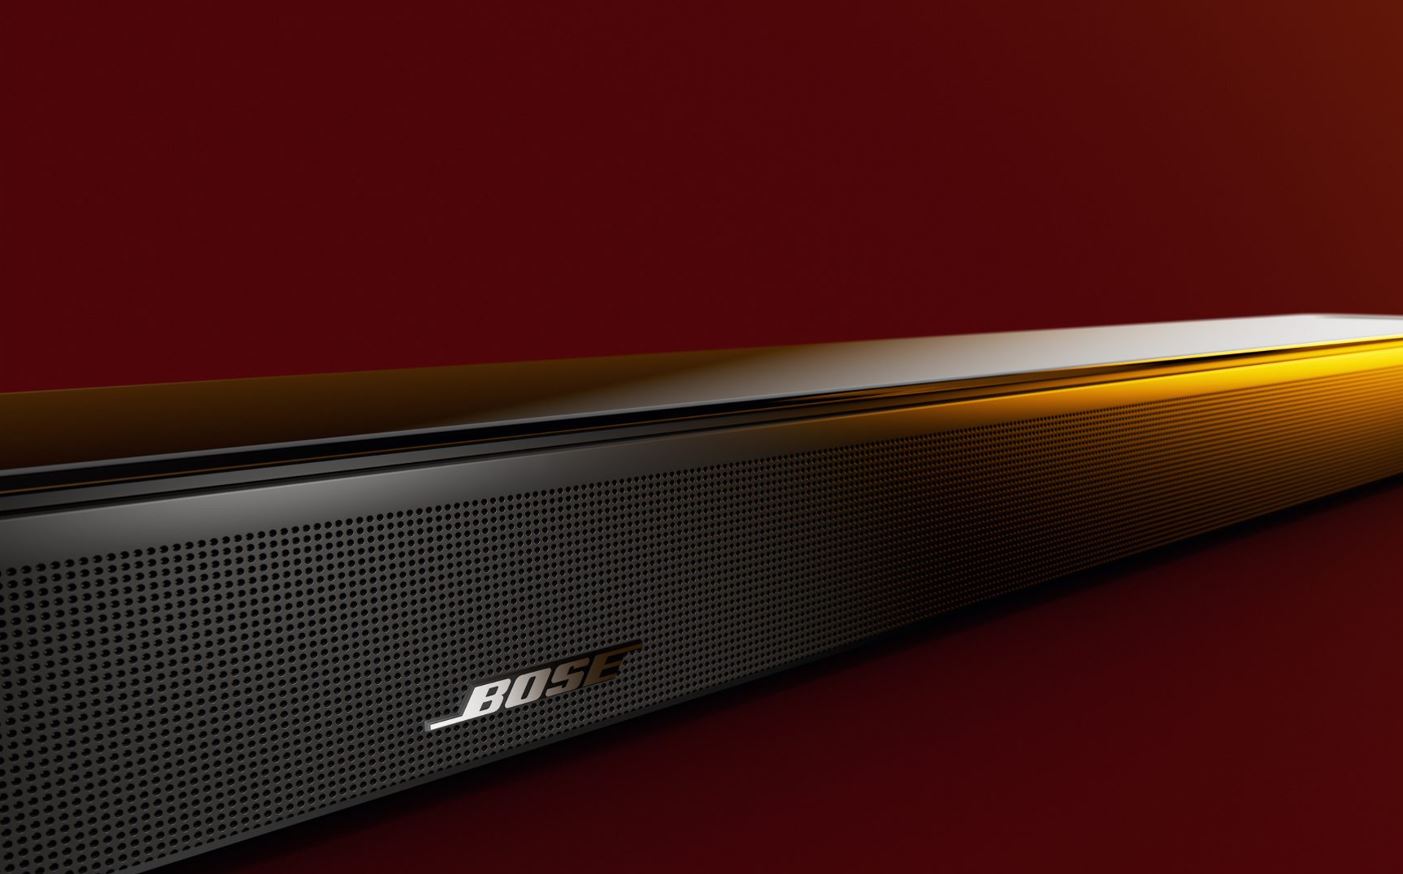 Nueva Bose Smart Ultra Soundbar, características, precio y ficha técnica